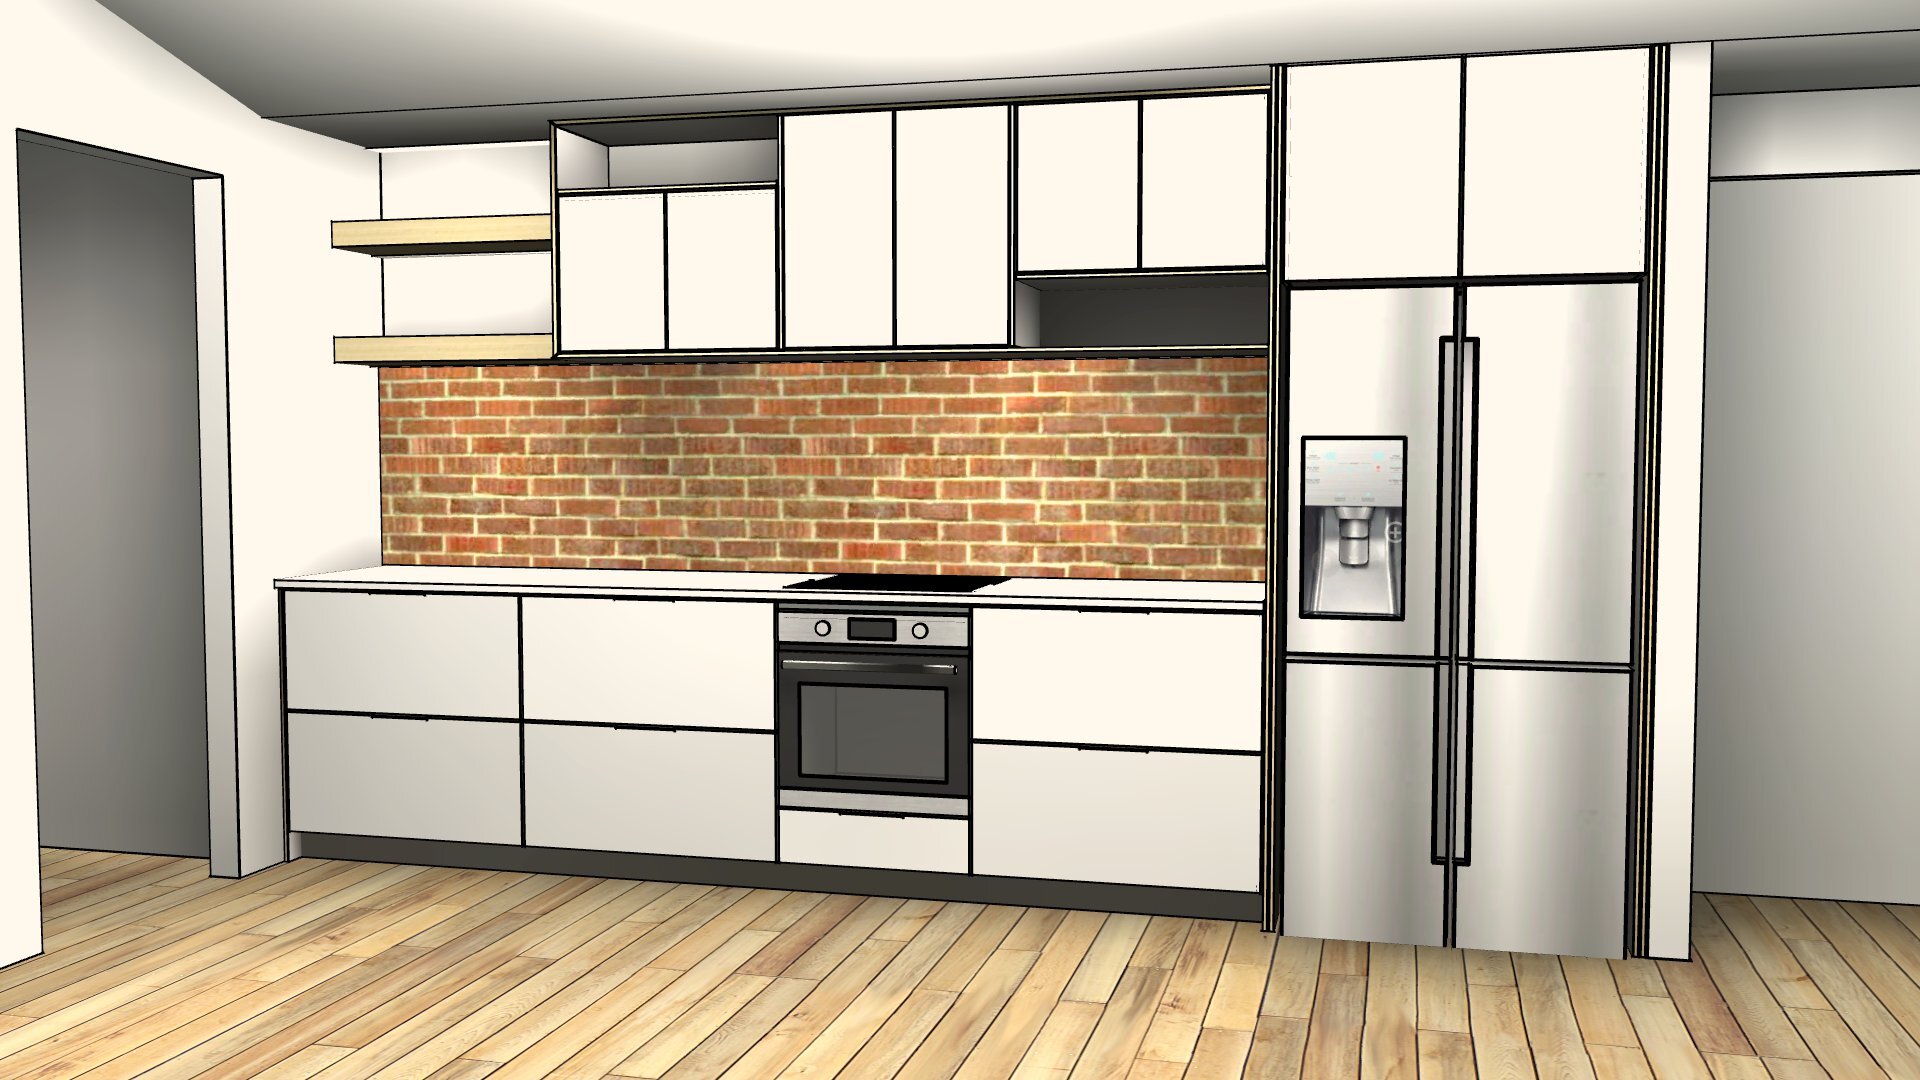 main kitchen render 4.jpg